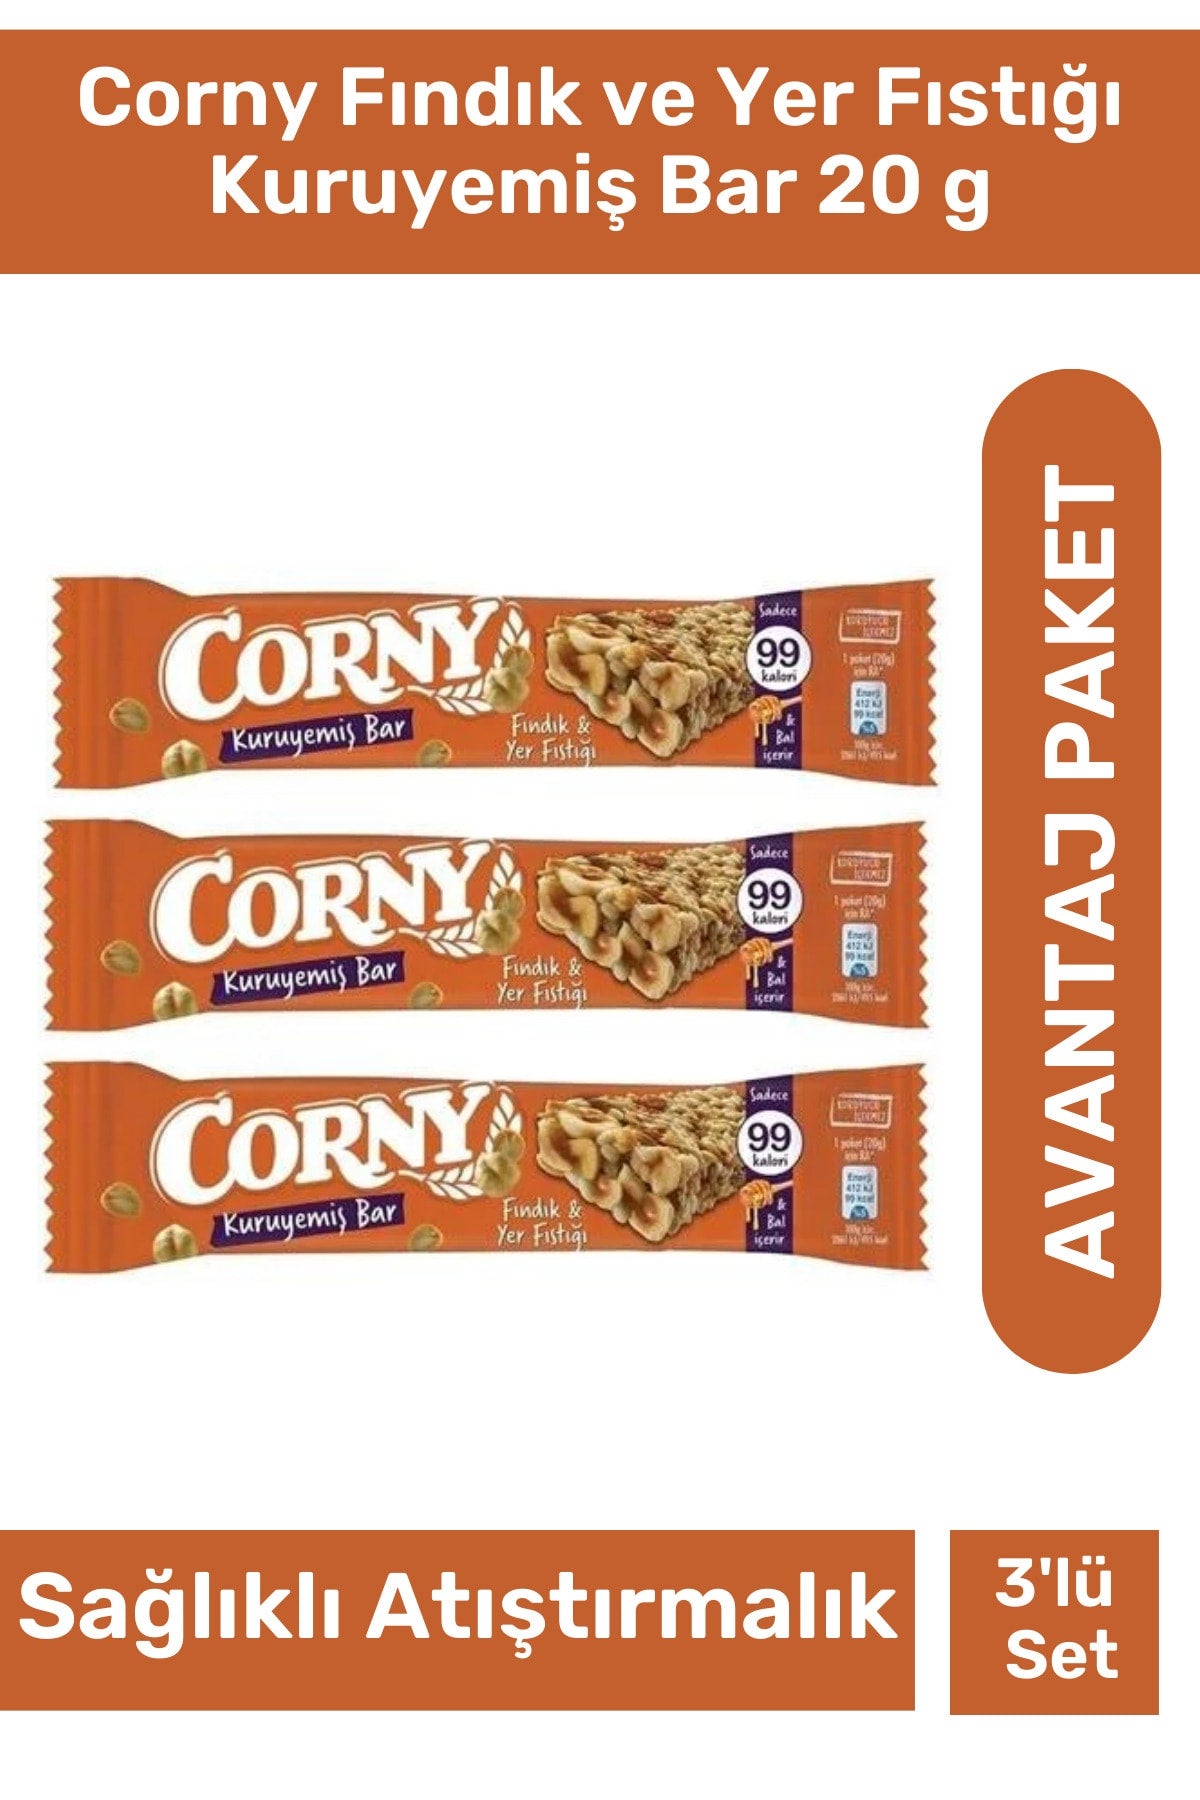 Corny Fındık ve Yer Fıstığı Kuruyemiş Bar 20 g 3'lü Paket